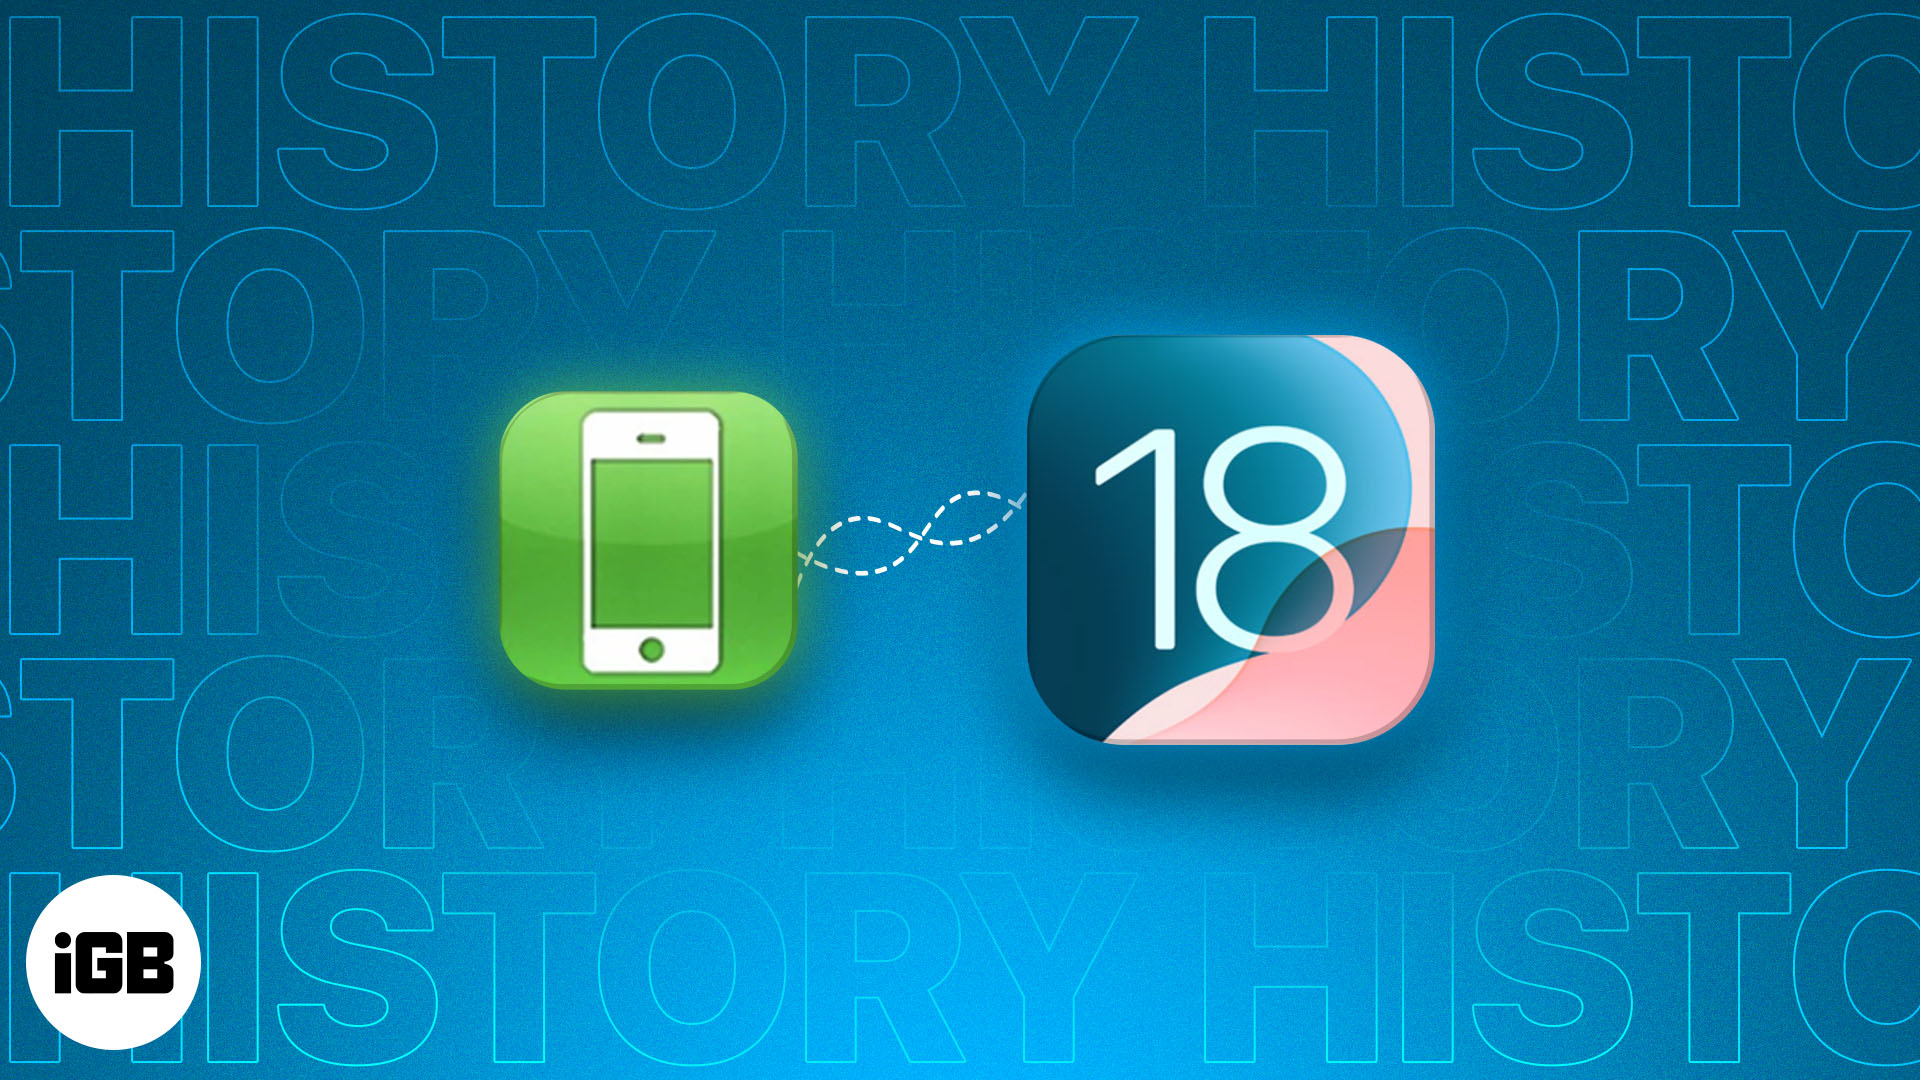 iOS 1 to iOS 18